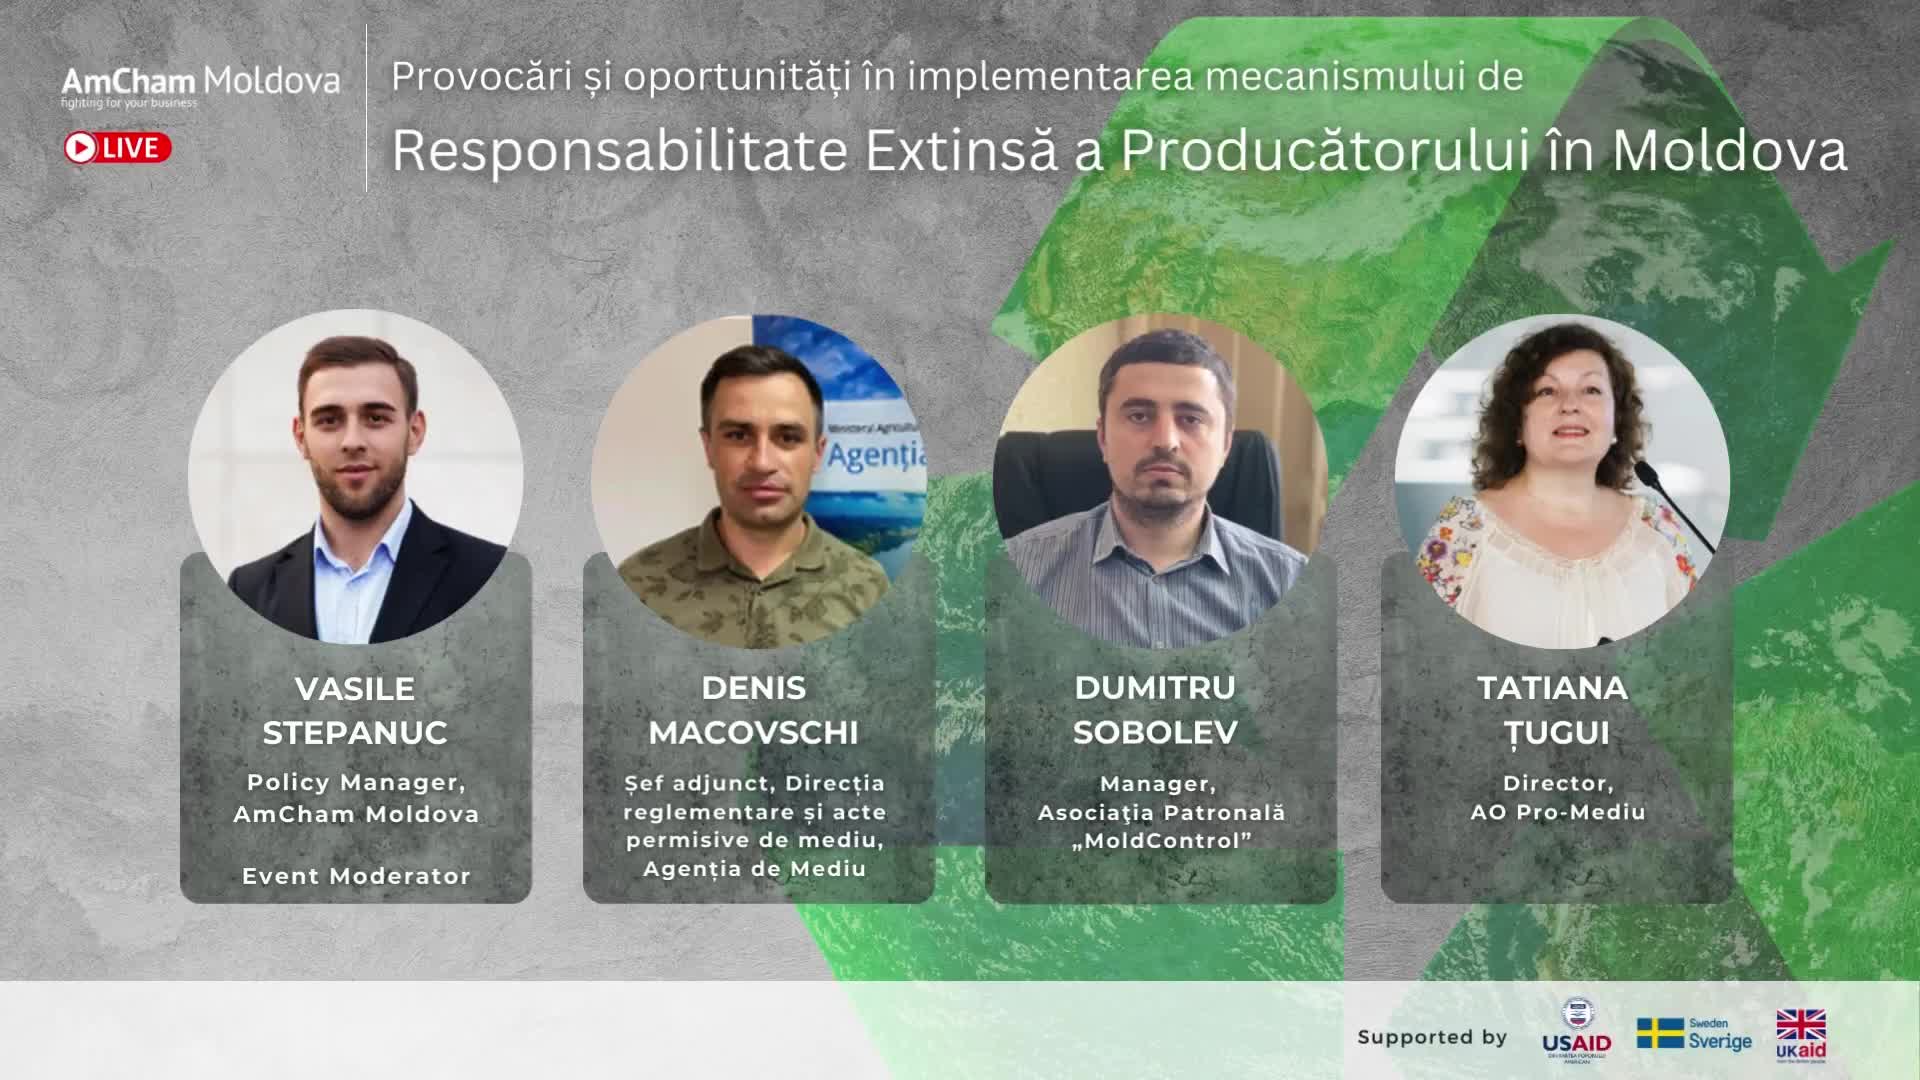 Discuție publică organizată de AmCham Moldova cu tema „Provocări și oportunități în implementarea mecanismului REP în Moldova”